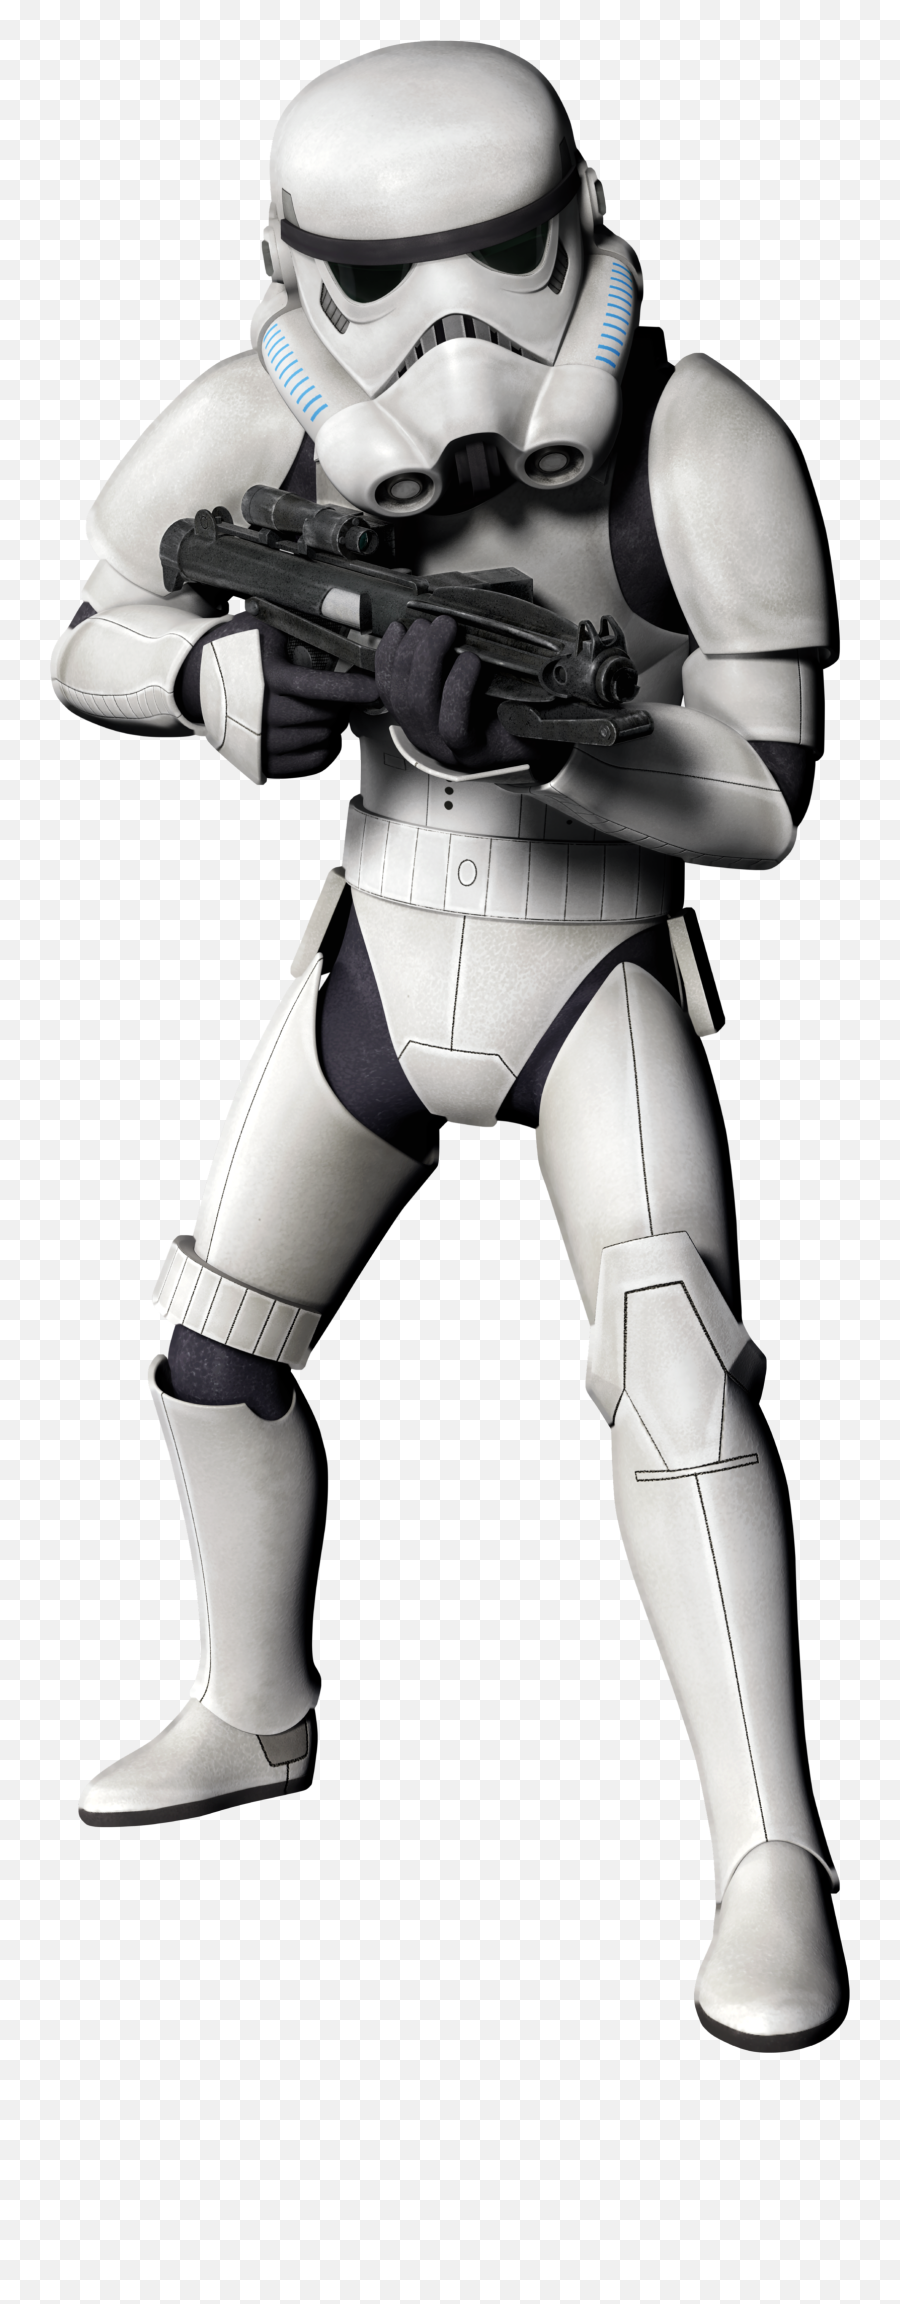 Download Toy Star Luke Football Skywalker Wars Hq Png Image - Stormtrooper Transparent Background,Luke Skywalker Transparent Background